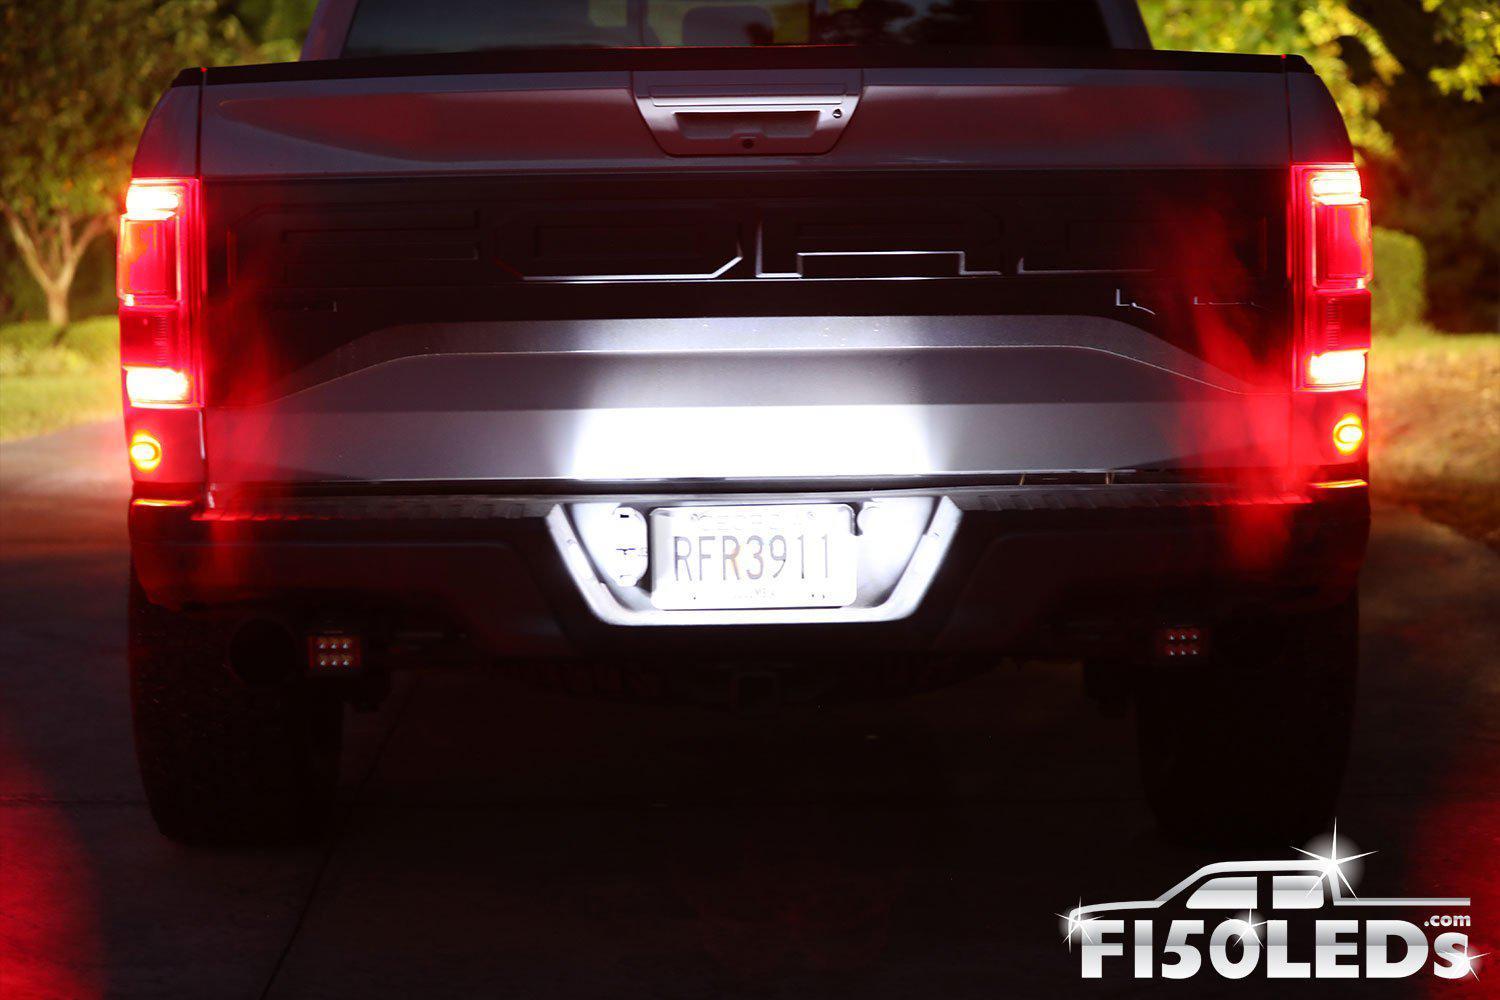 2017 - 2020 F150 RAPTOR LED platinum Tag Lighting-2017-18 F150 RAPTOR LEDS-F150LEDs.com